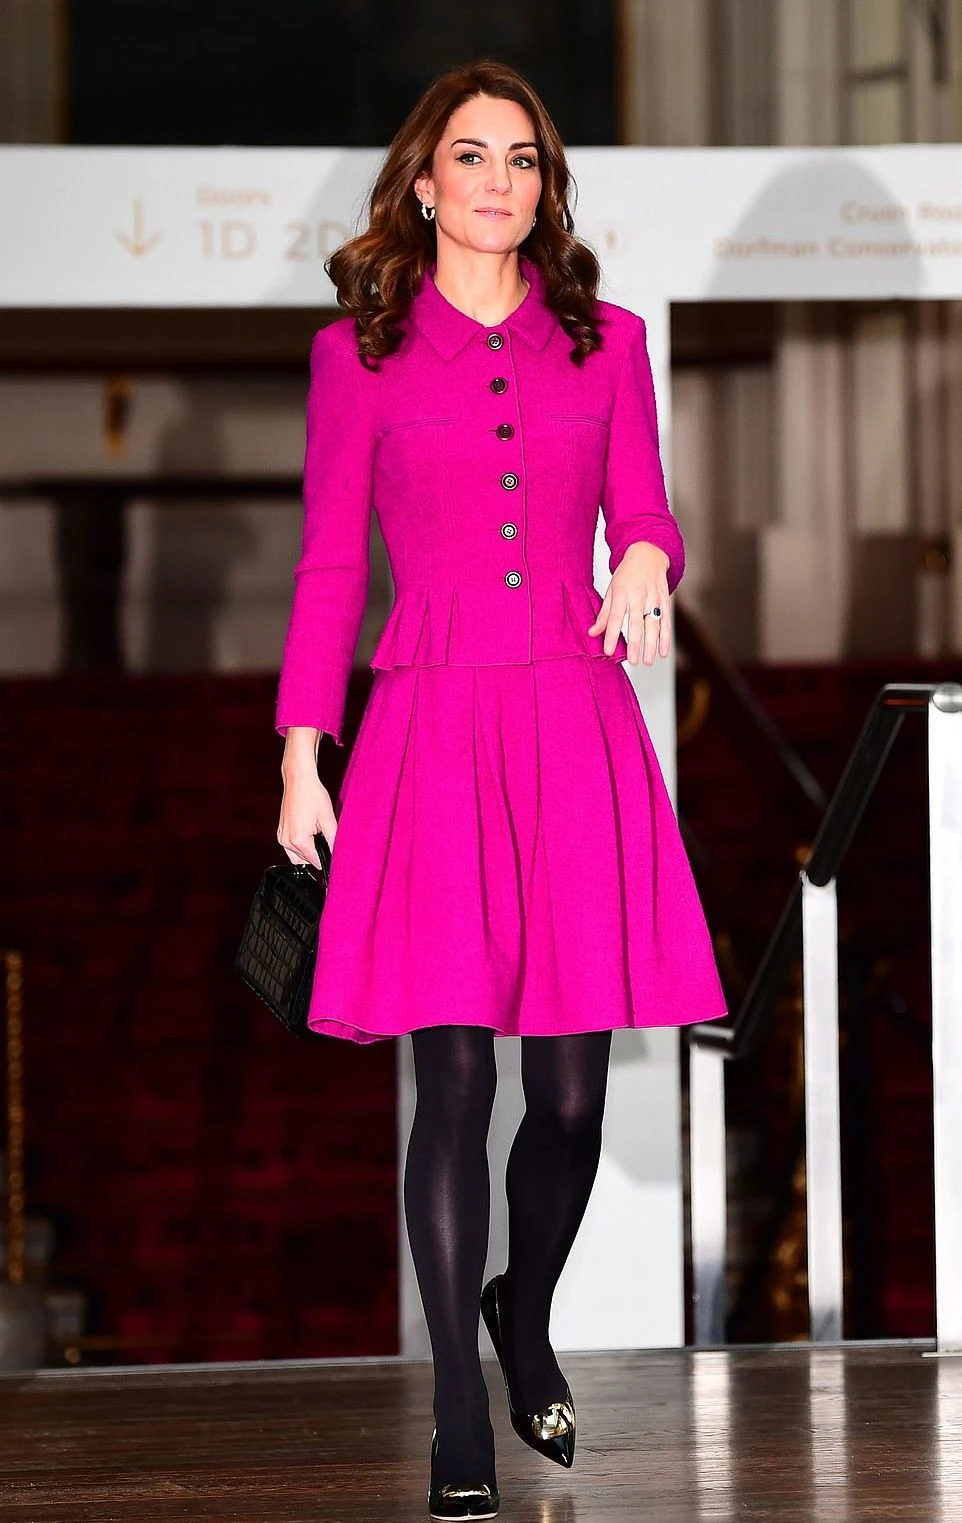 Джинсы с ботинками и розовый костюм Кейт Миддлтон